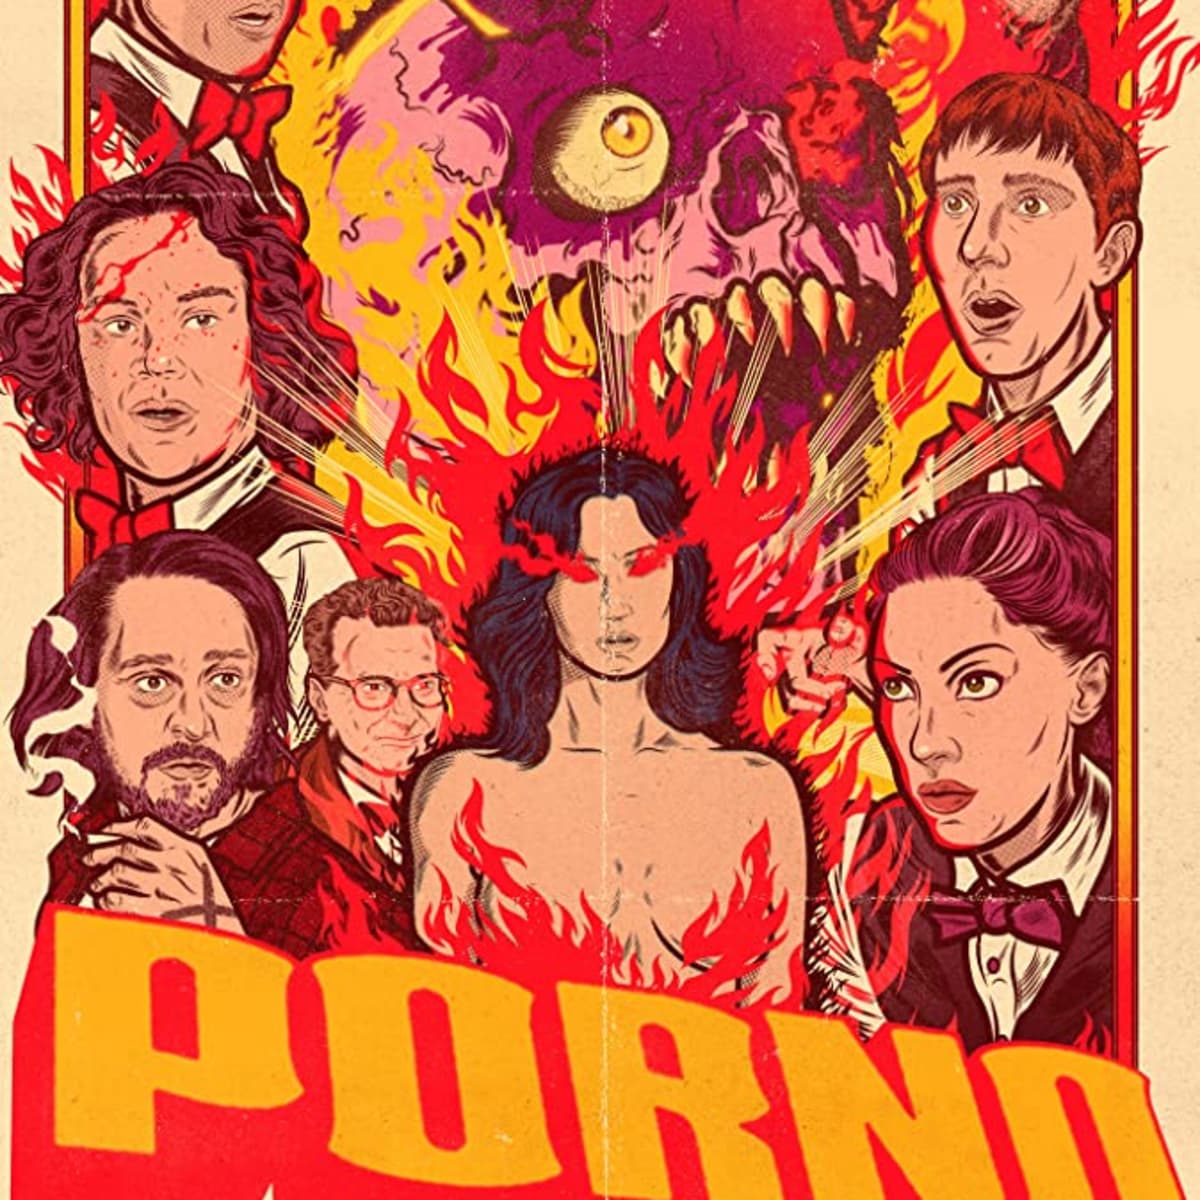 Porno2019 - Porno (2019) Movie Review - HubPages